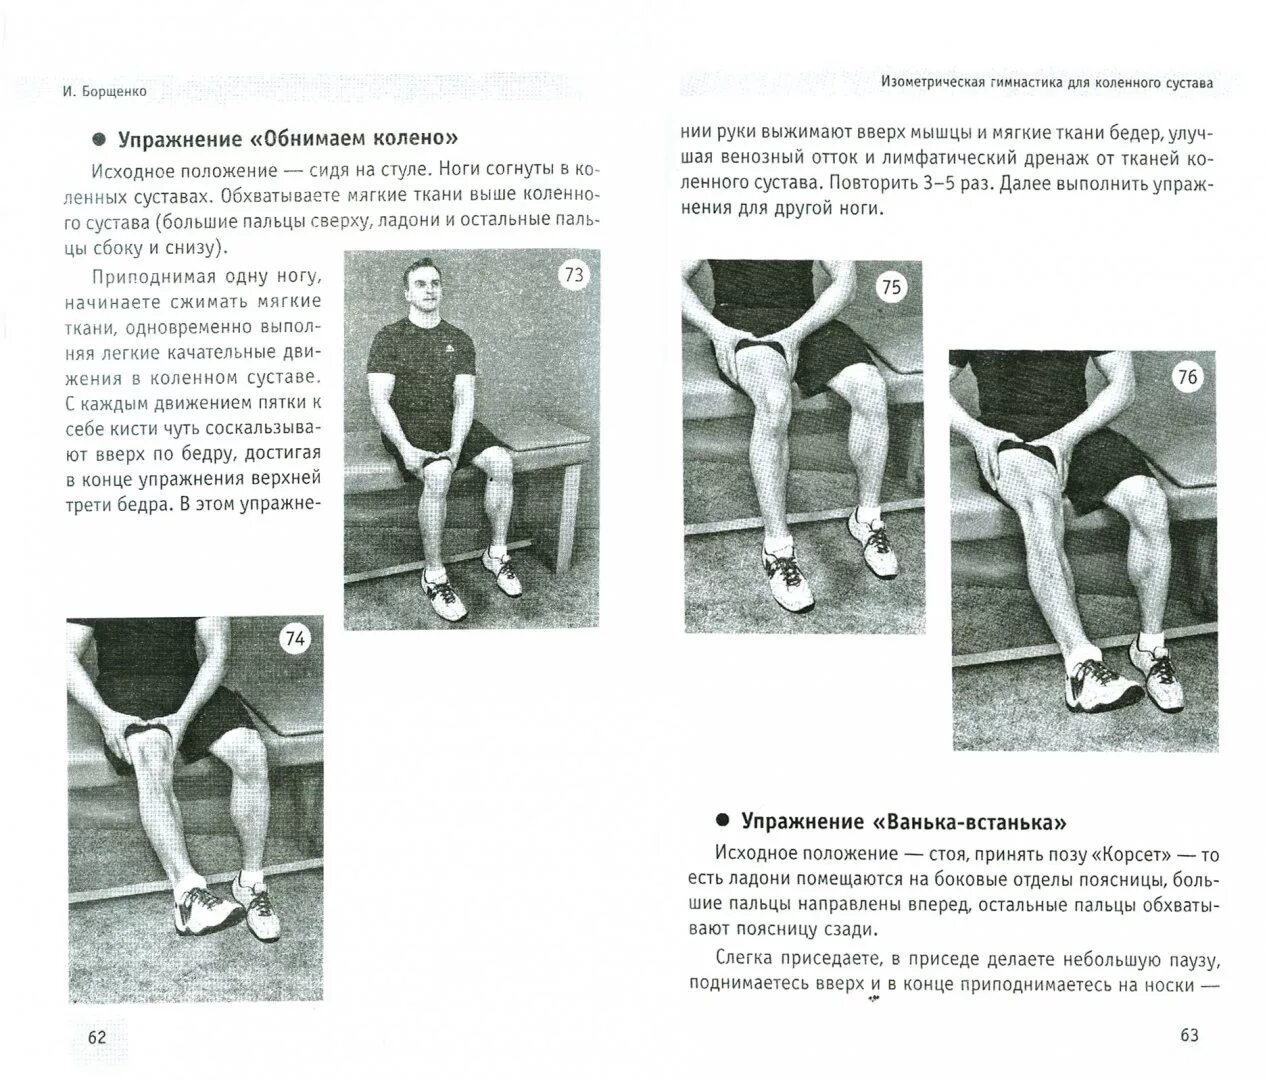 Упражнения по Борщенко для коленного сустава. Изометрическая гимнастика для коленного сустава. Изометрическая гимнастика для тазобедренного сустава. Изометрические упражнения для коленного сустава. Физкультура для коленных суставов